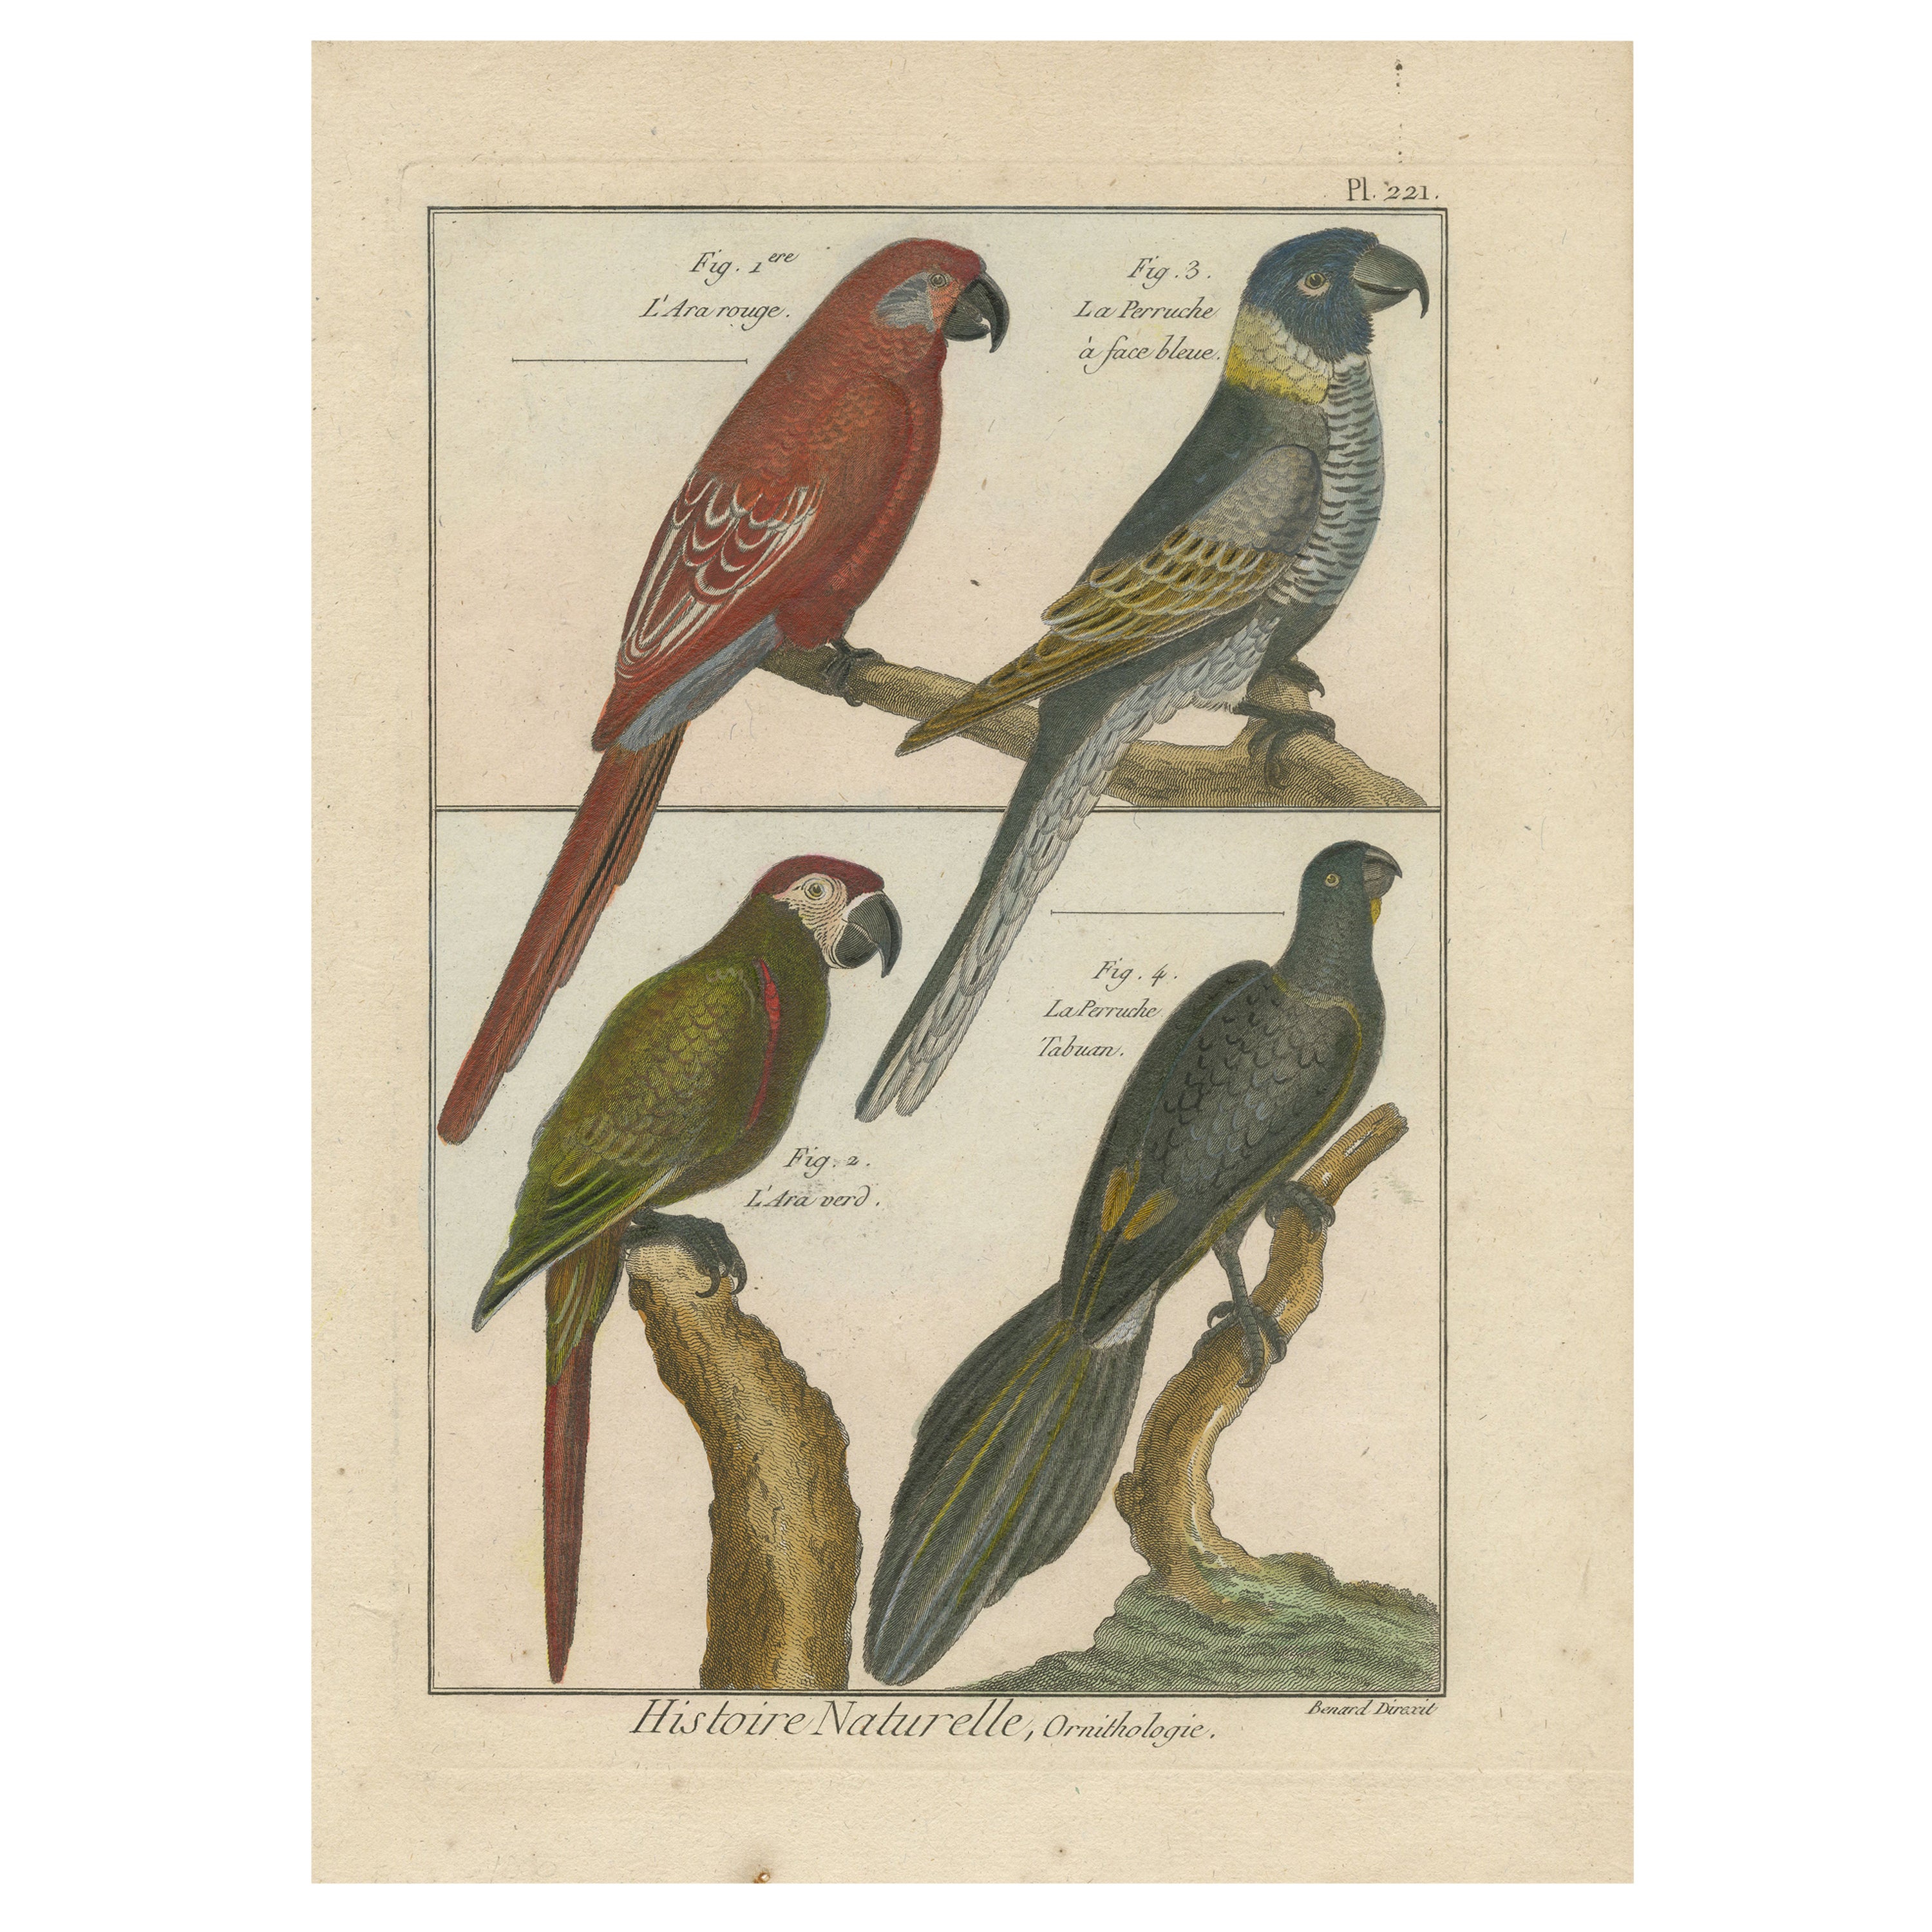 Schöne, farbenfrohe Kupfergravur von Papageien und Parakeetten '1792' mit Kupferstich